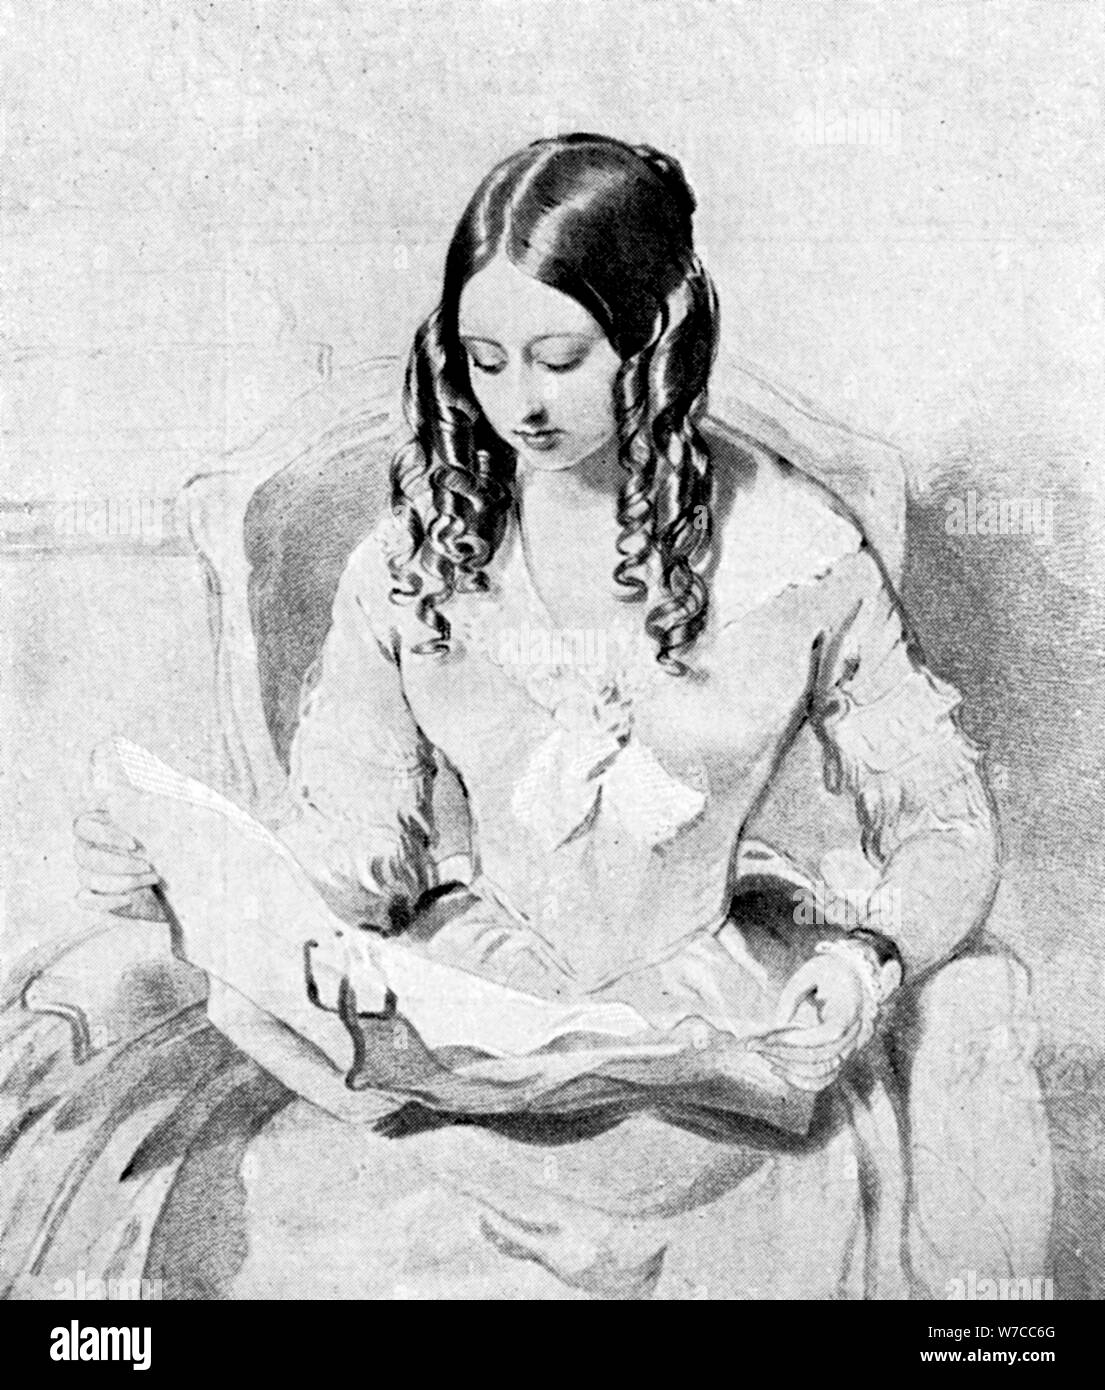 La regina Victoria la lettura di Dispatches, c1840s.Artista: William Charles Ross Foto Stock